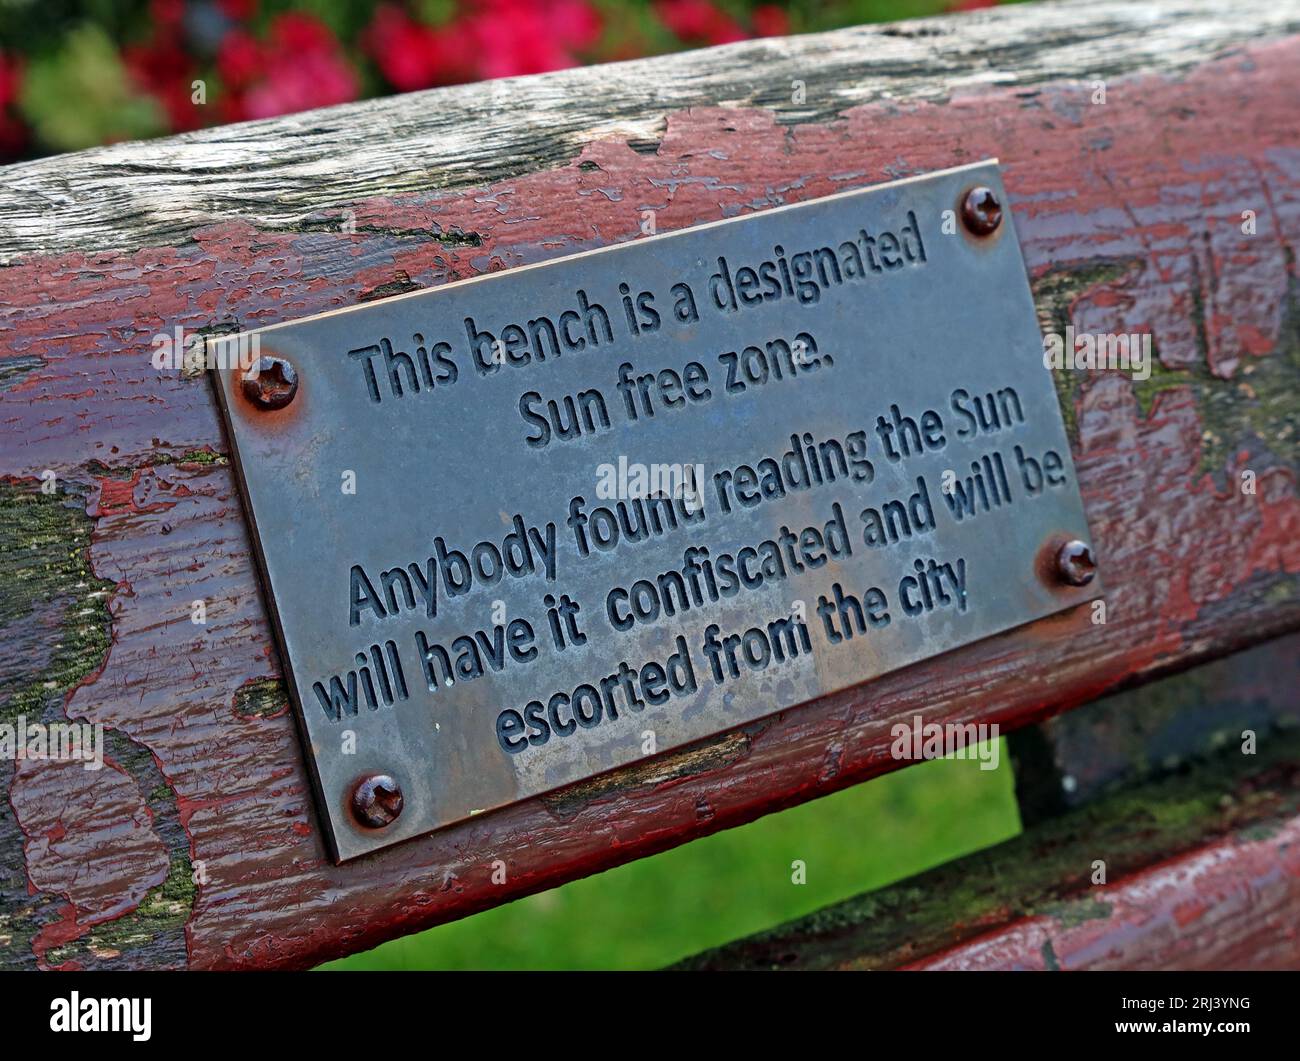 Questa panchina è una zona libera del Sole designata - chiunque venga trovato a leggere il Sole, lo confiscerà e sarà scortato dalla città di Liverpool Foto Stock